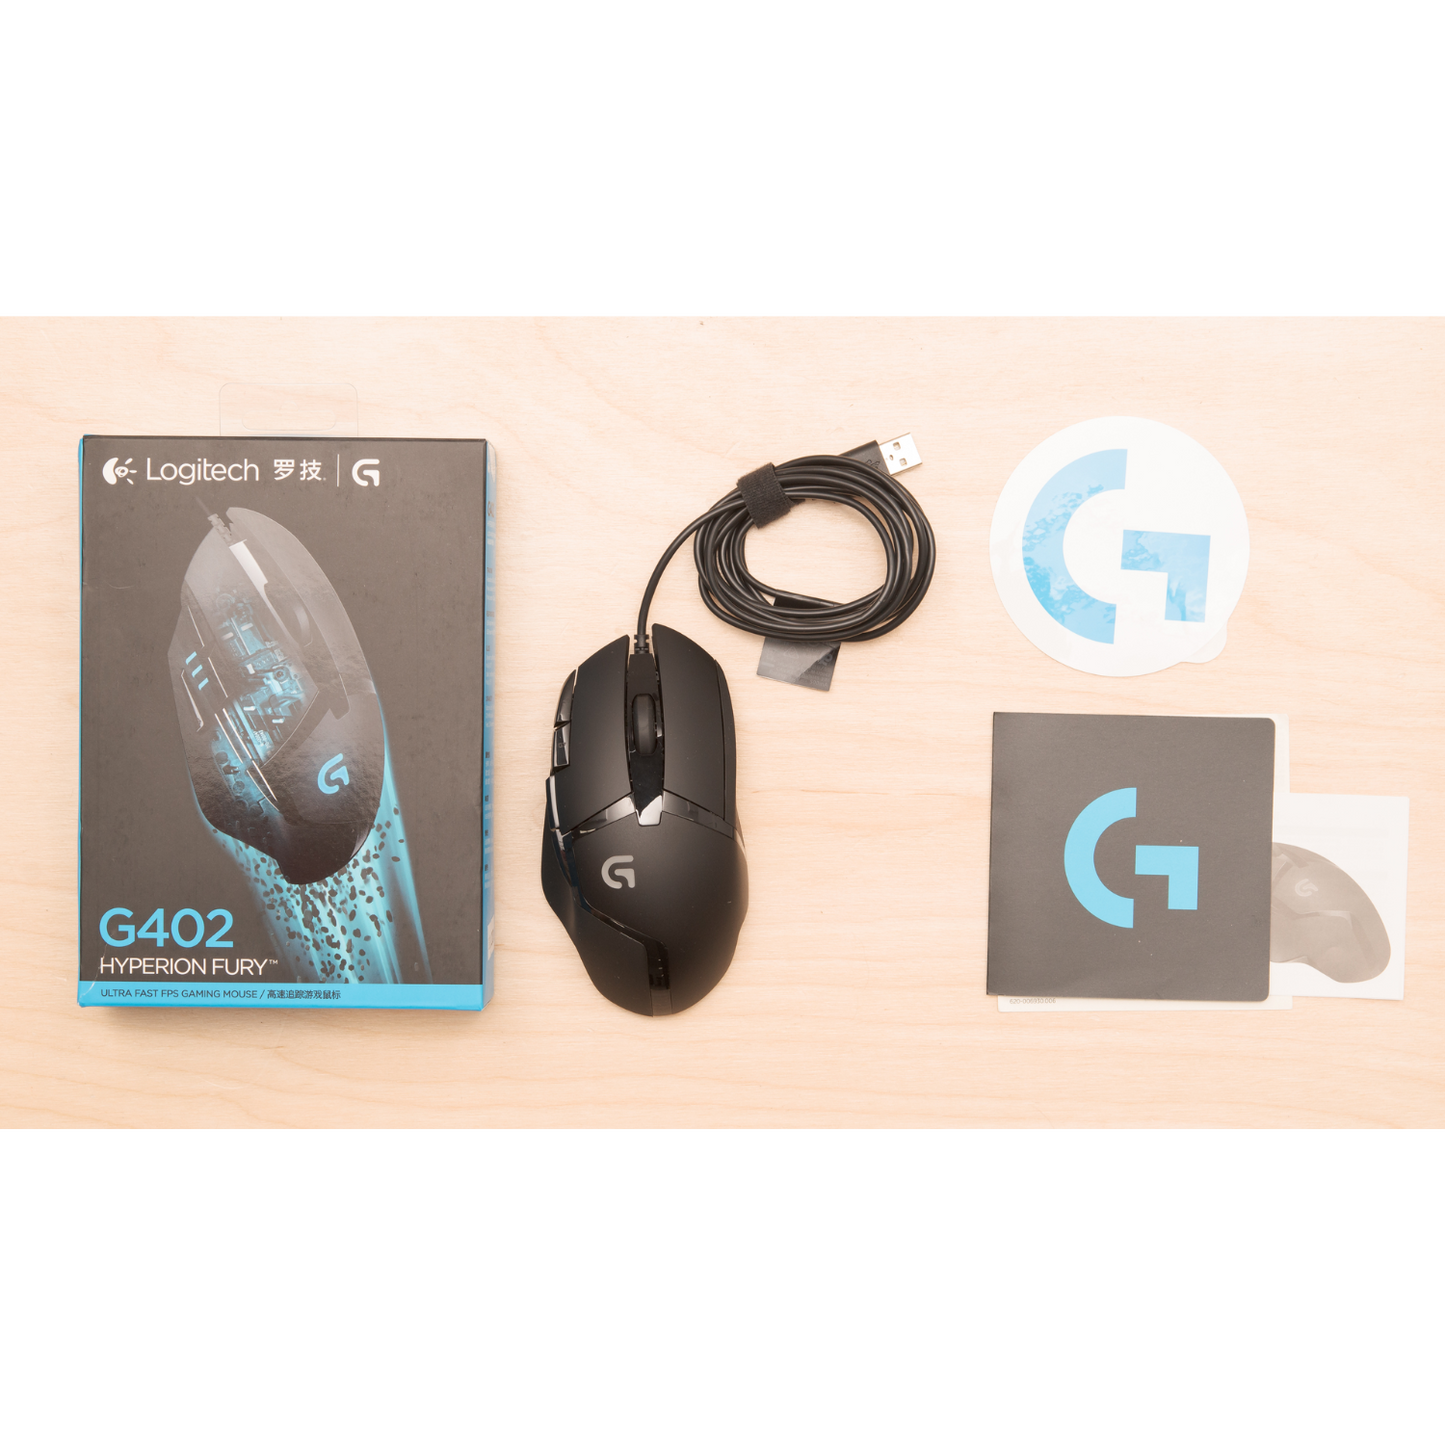 Logitech G402 Mouse